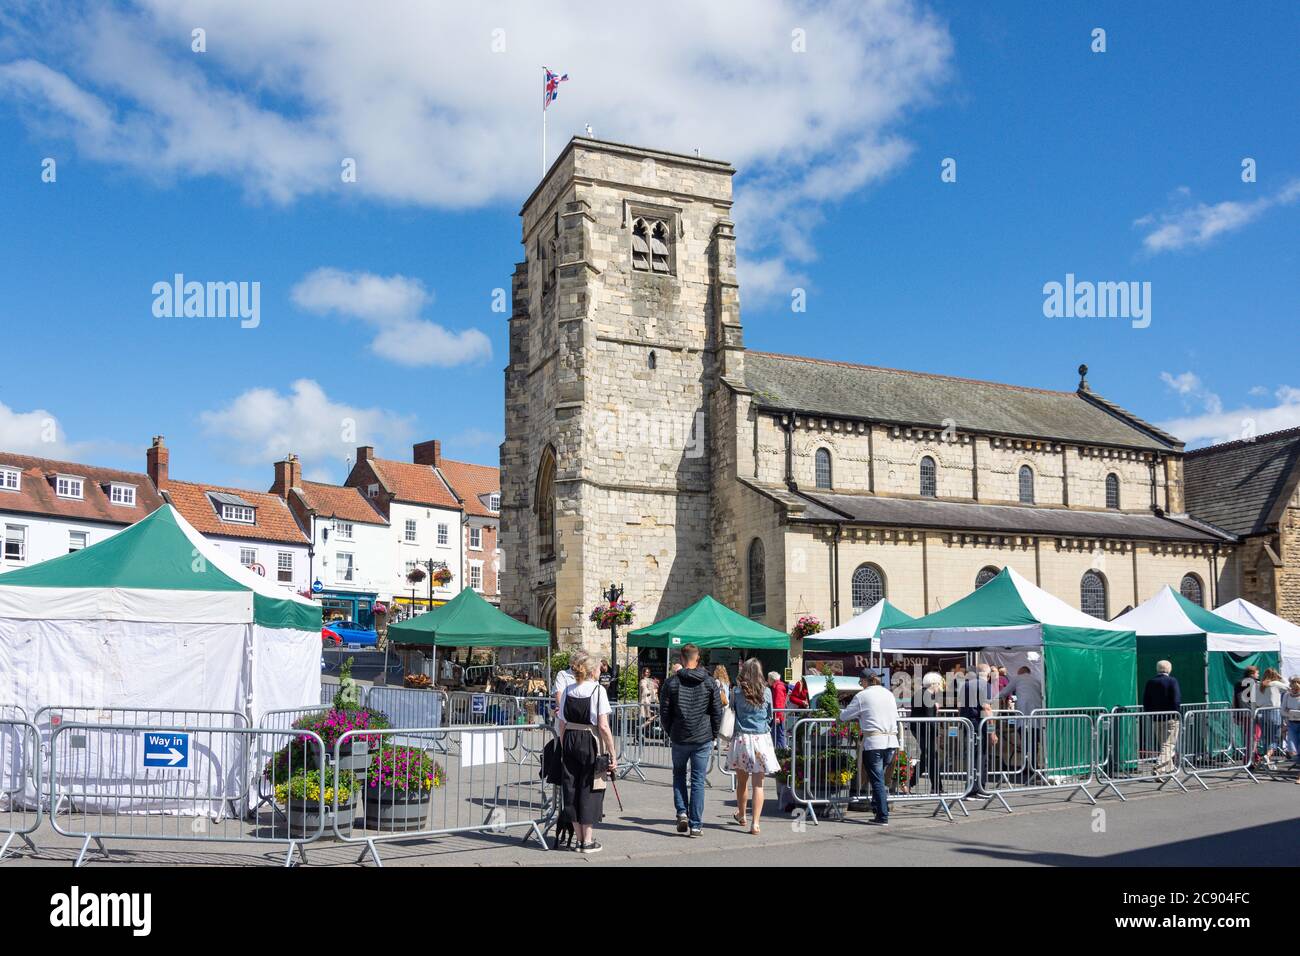 Market Day et l'église St Michael's Church, Market place, Malton, North Yorkshire, Angleterre, Royaume-Uni Banque D'Images